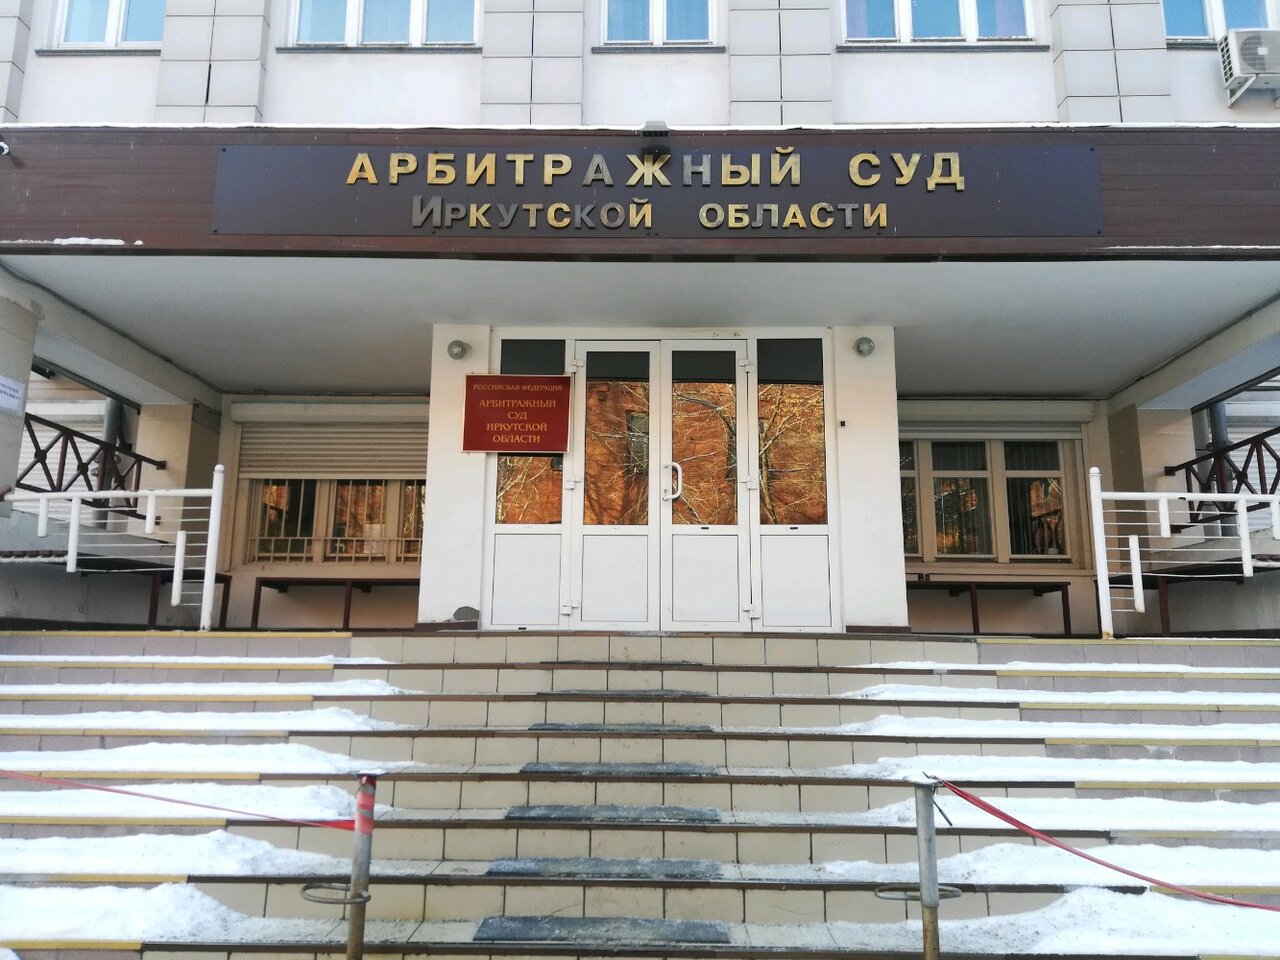 Арбитражный суд Иркутска обязал ЧОП «Кодекс» выплатить почти 4 млн. рублей штрафа